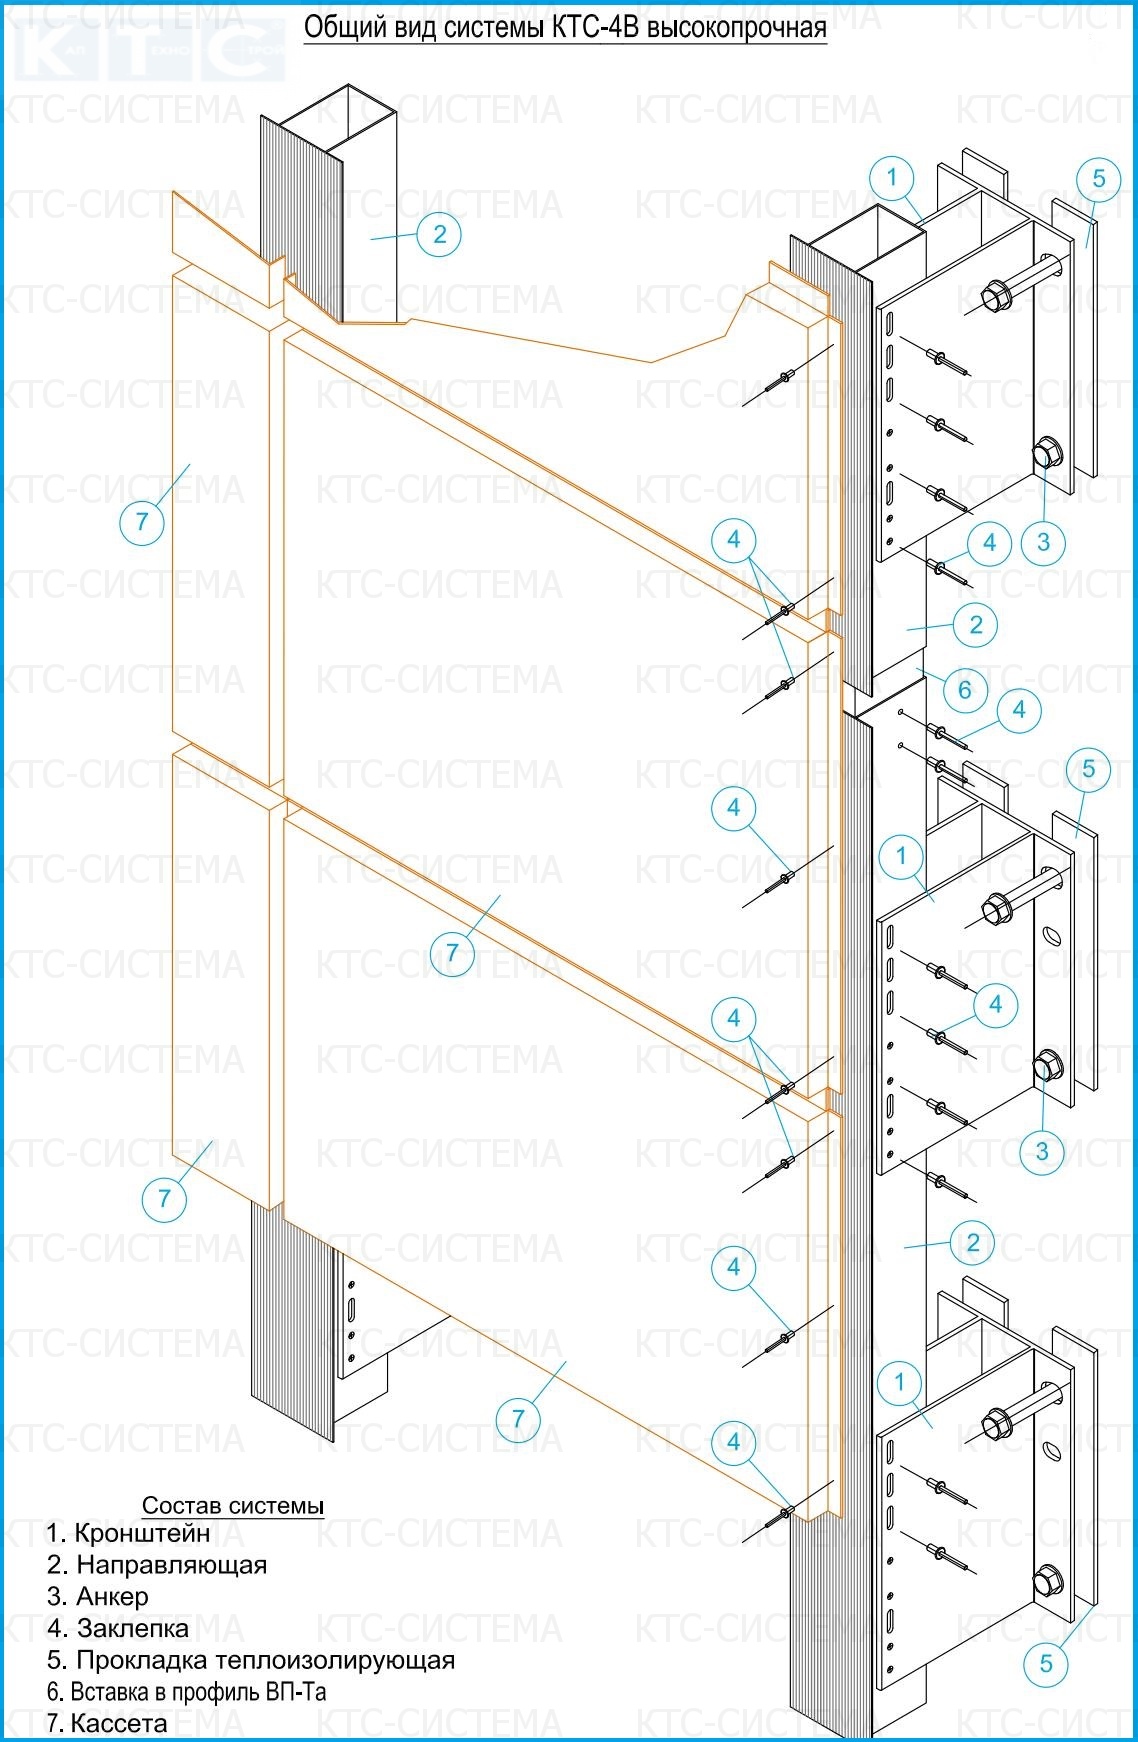 Фасадные системы  и подсистемы - КТС-4В "Высокопрочная" система для композитных панелей